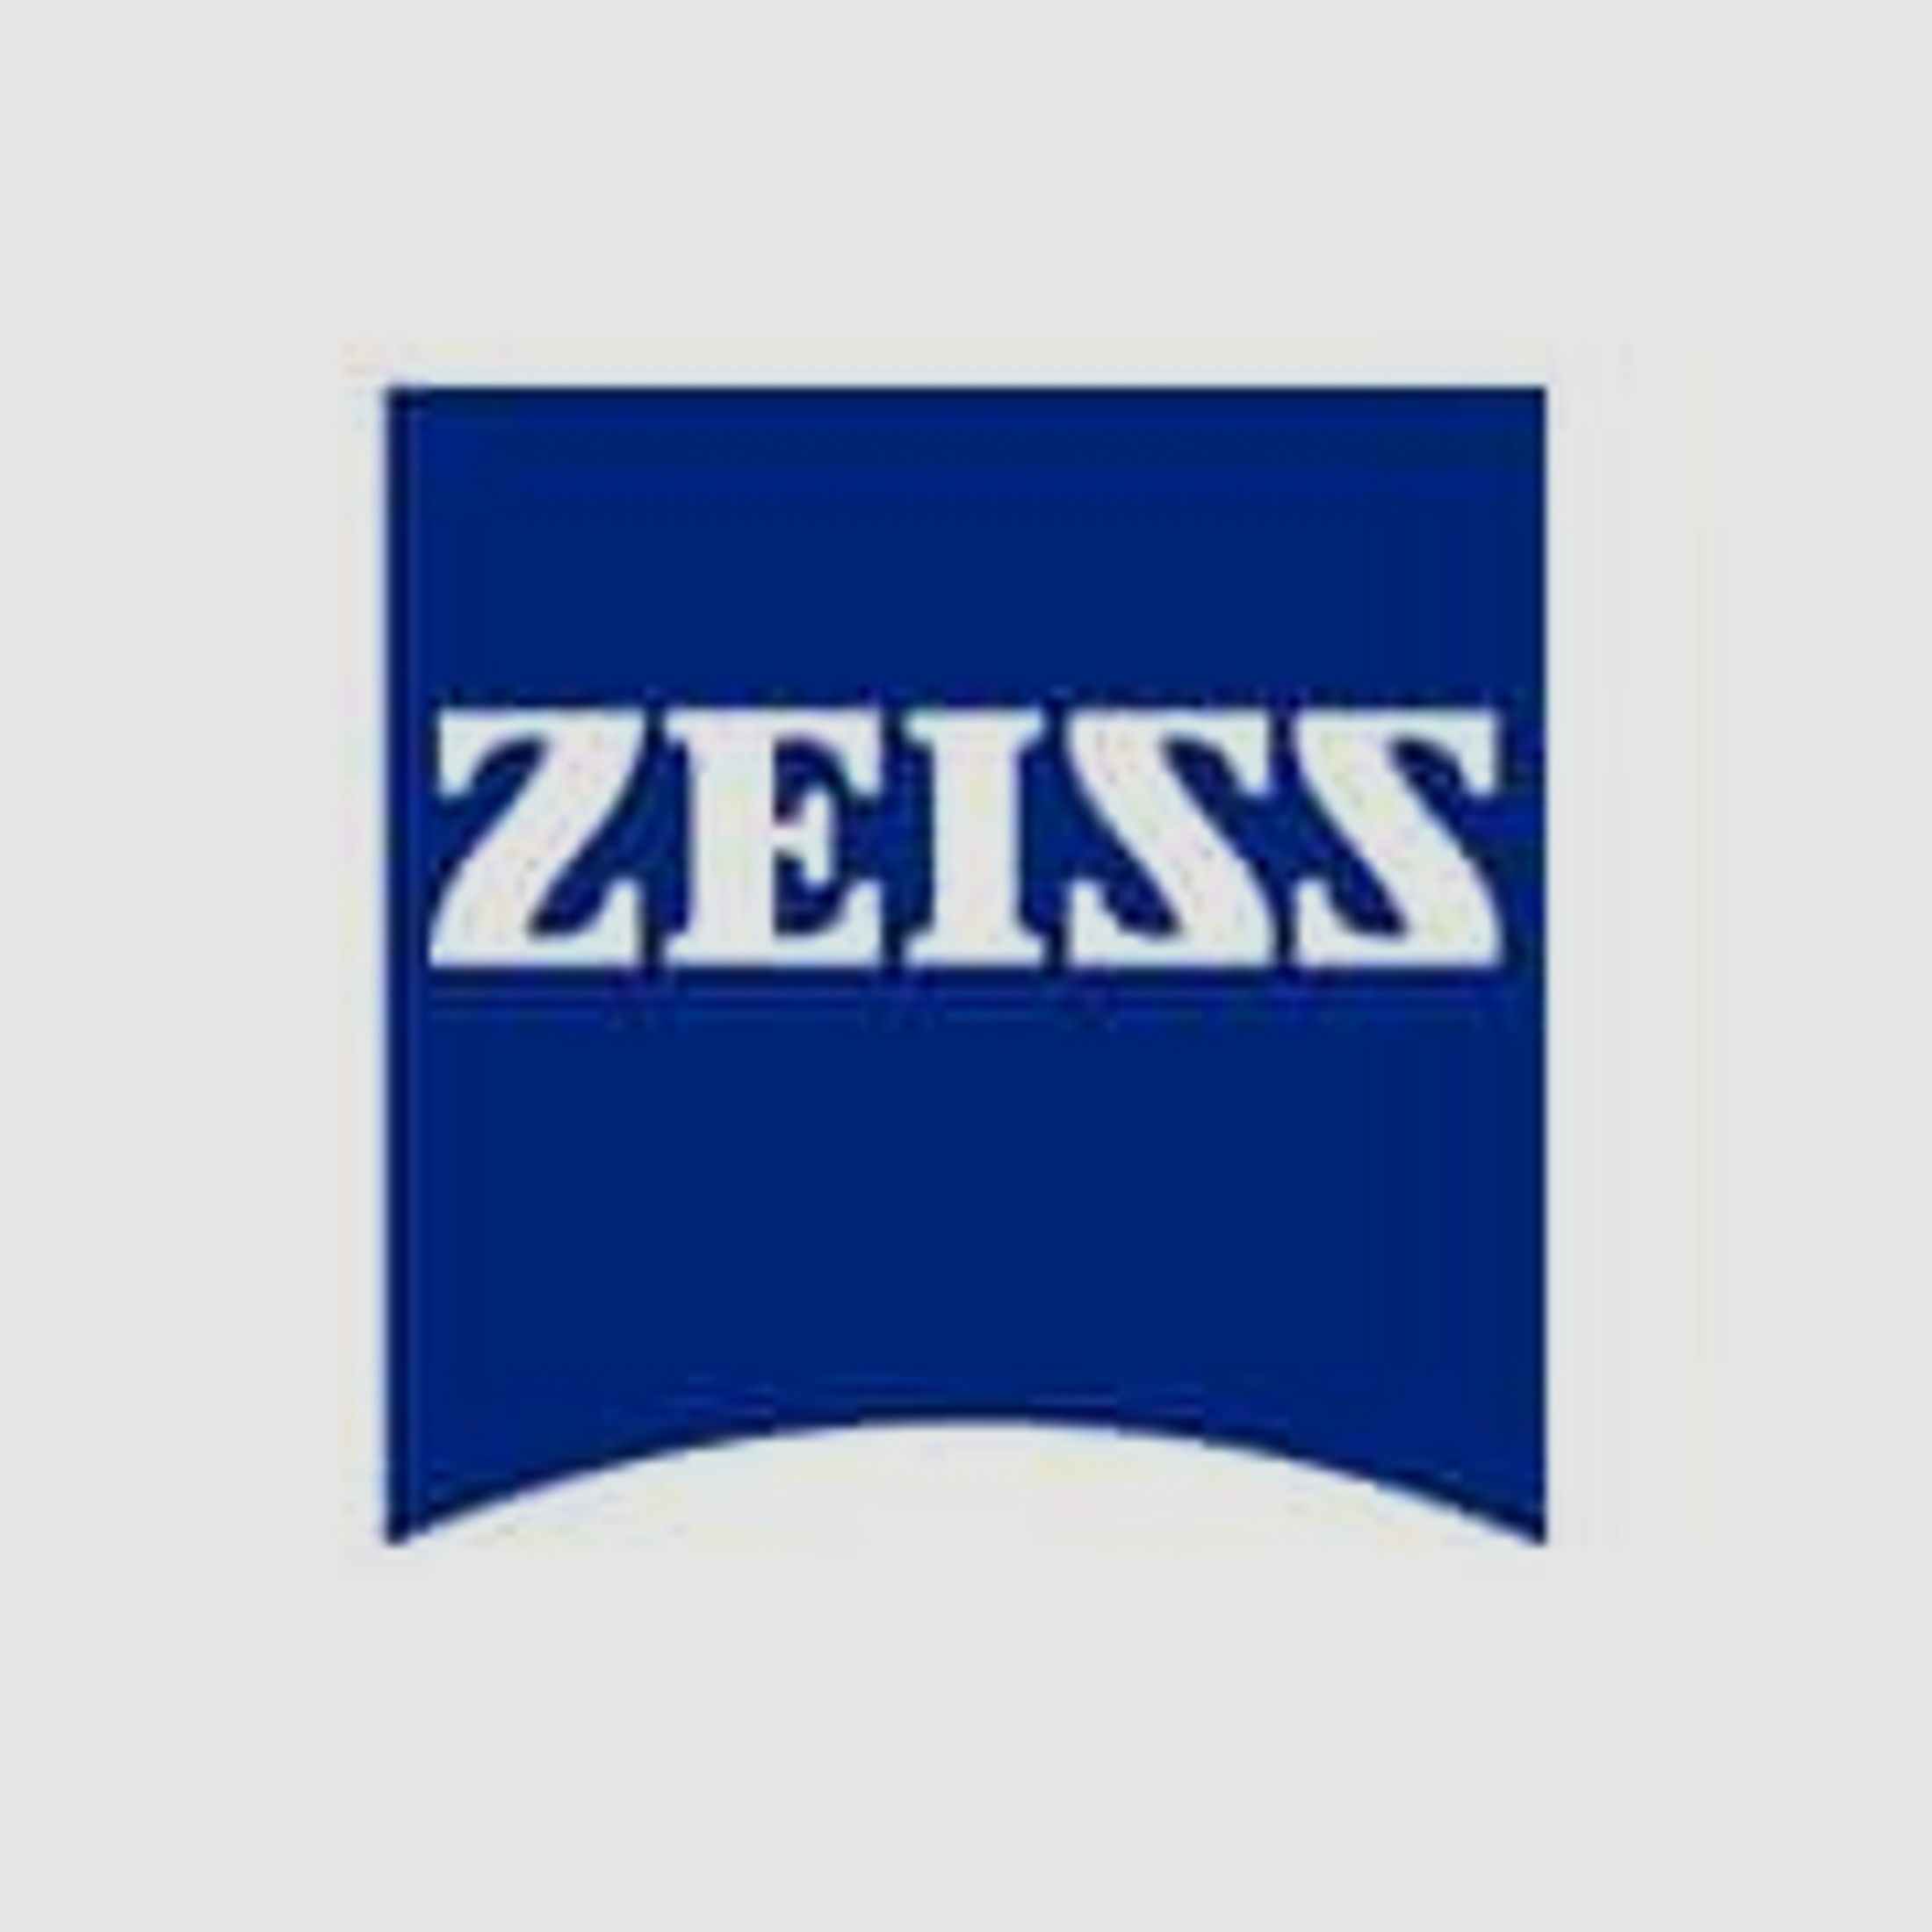 ZEISS Zubehör für Zielfernrohre Okular-Gummischutz 525401-0008 f. alle Duralyt Modelle